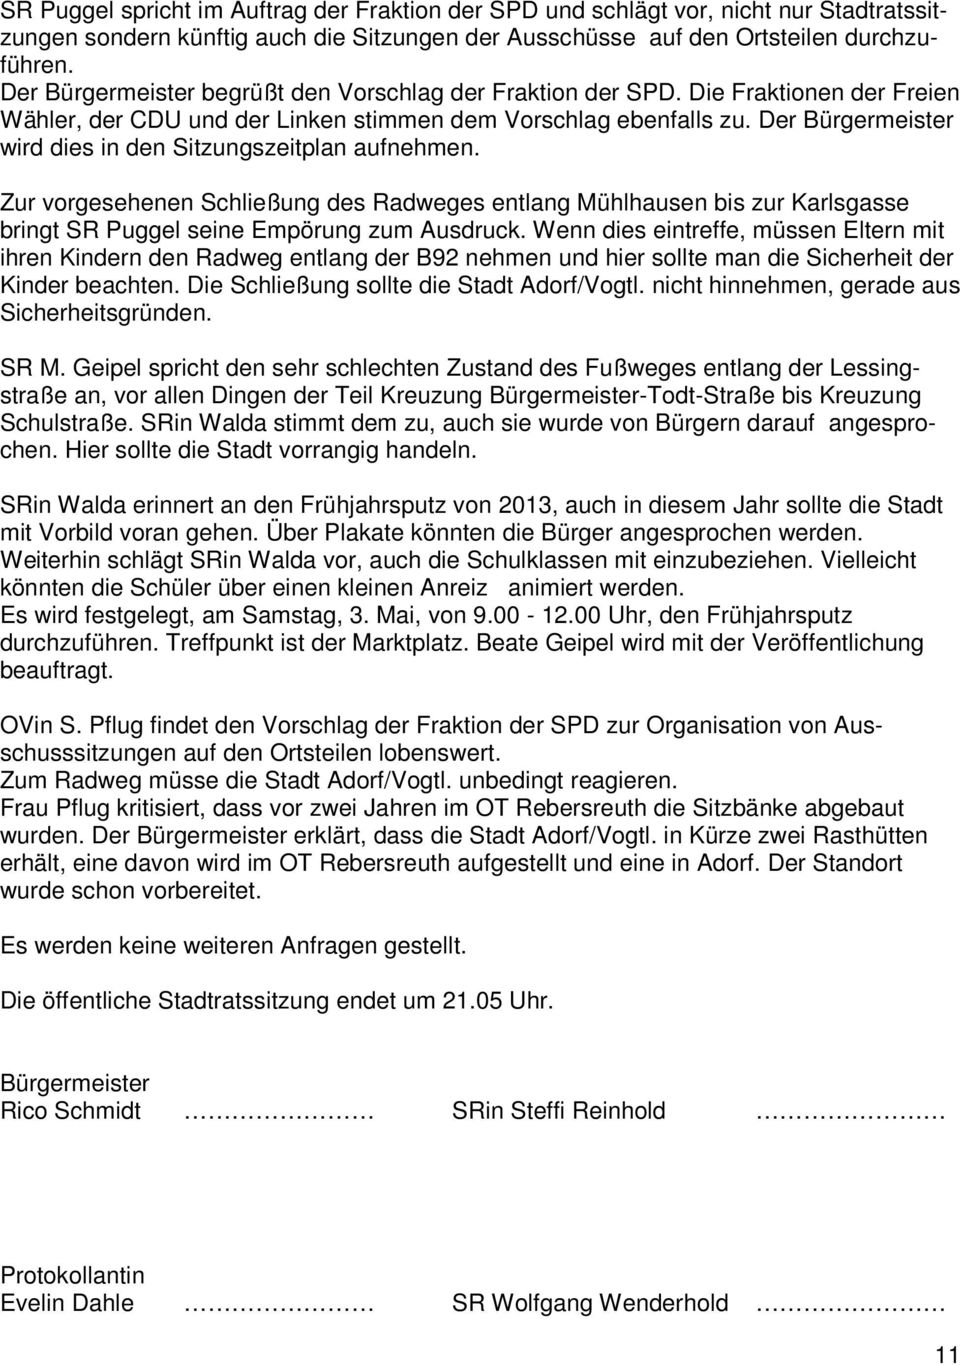 Der Bürgermeister wird dies in den Sitzungszeitplan aufnehmen. Zur vorgesehenen Schließung des Radweges entlang Mühlhausen bis zur Karlsgasse bringt SR Puggel seine Empörung zum Ausdruck.